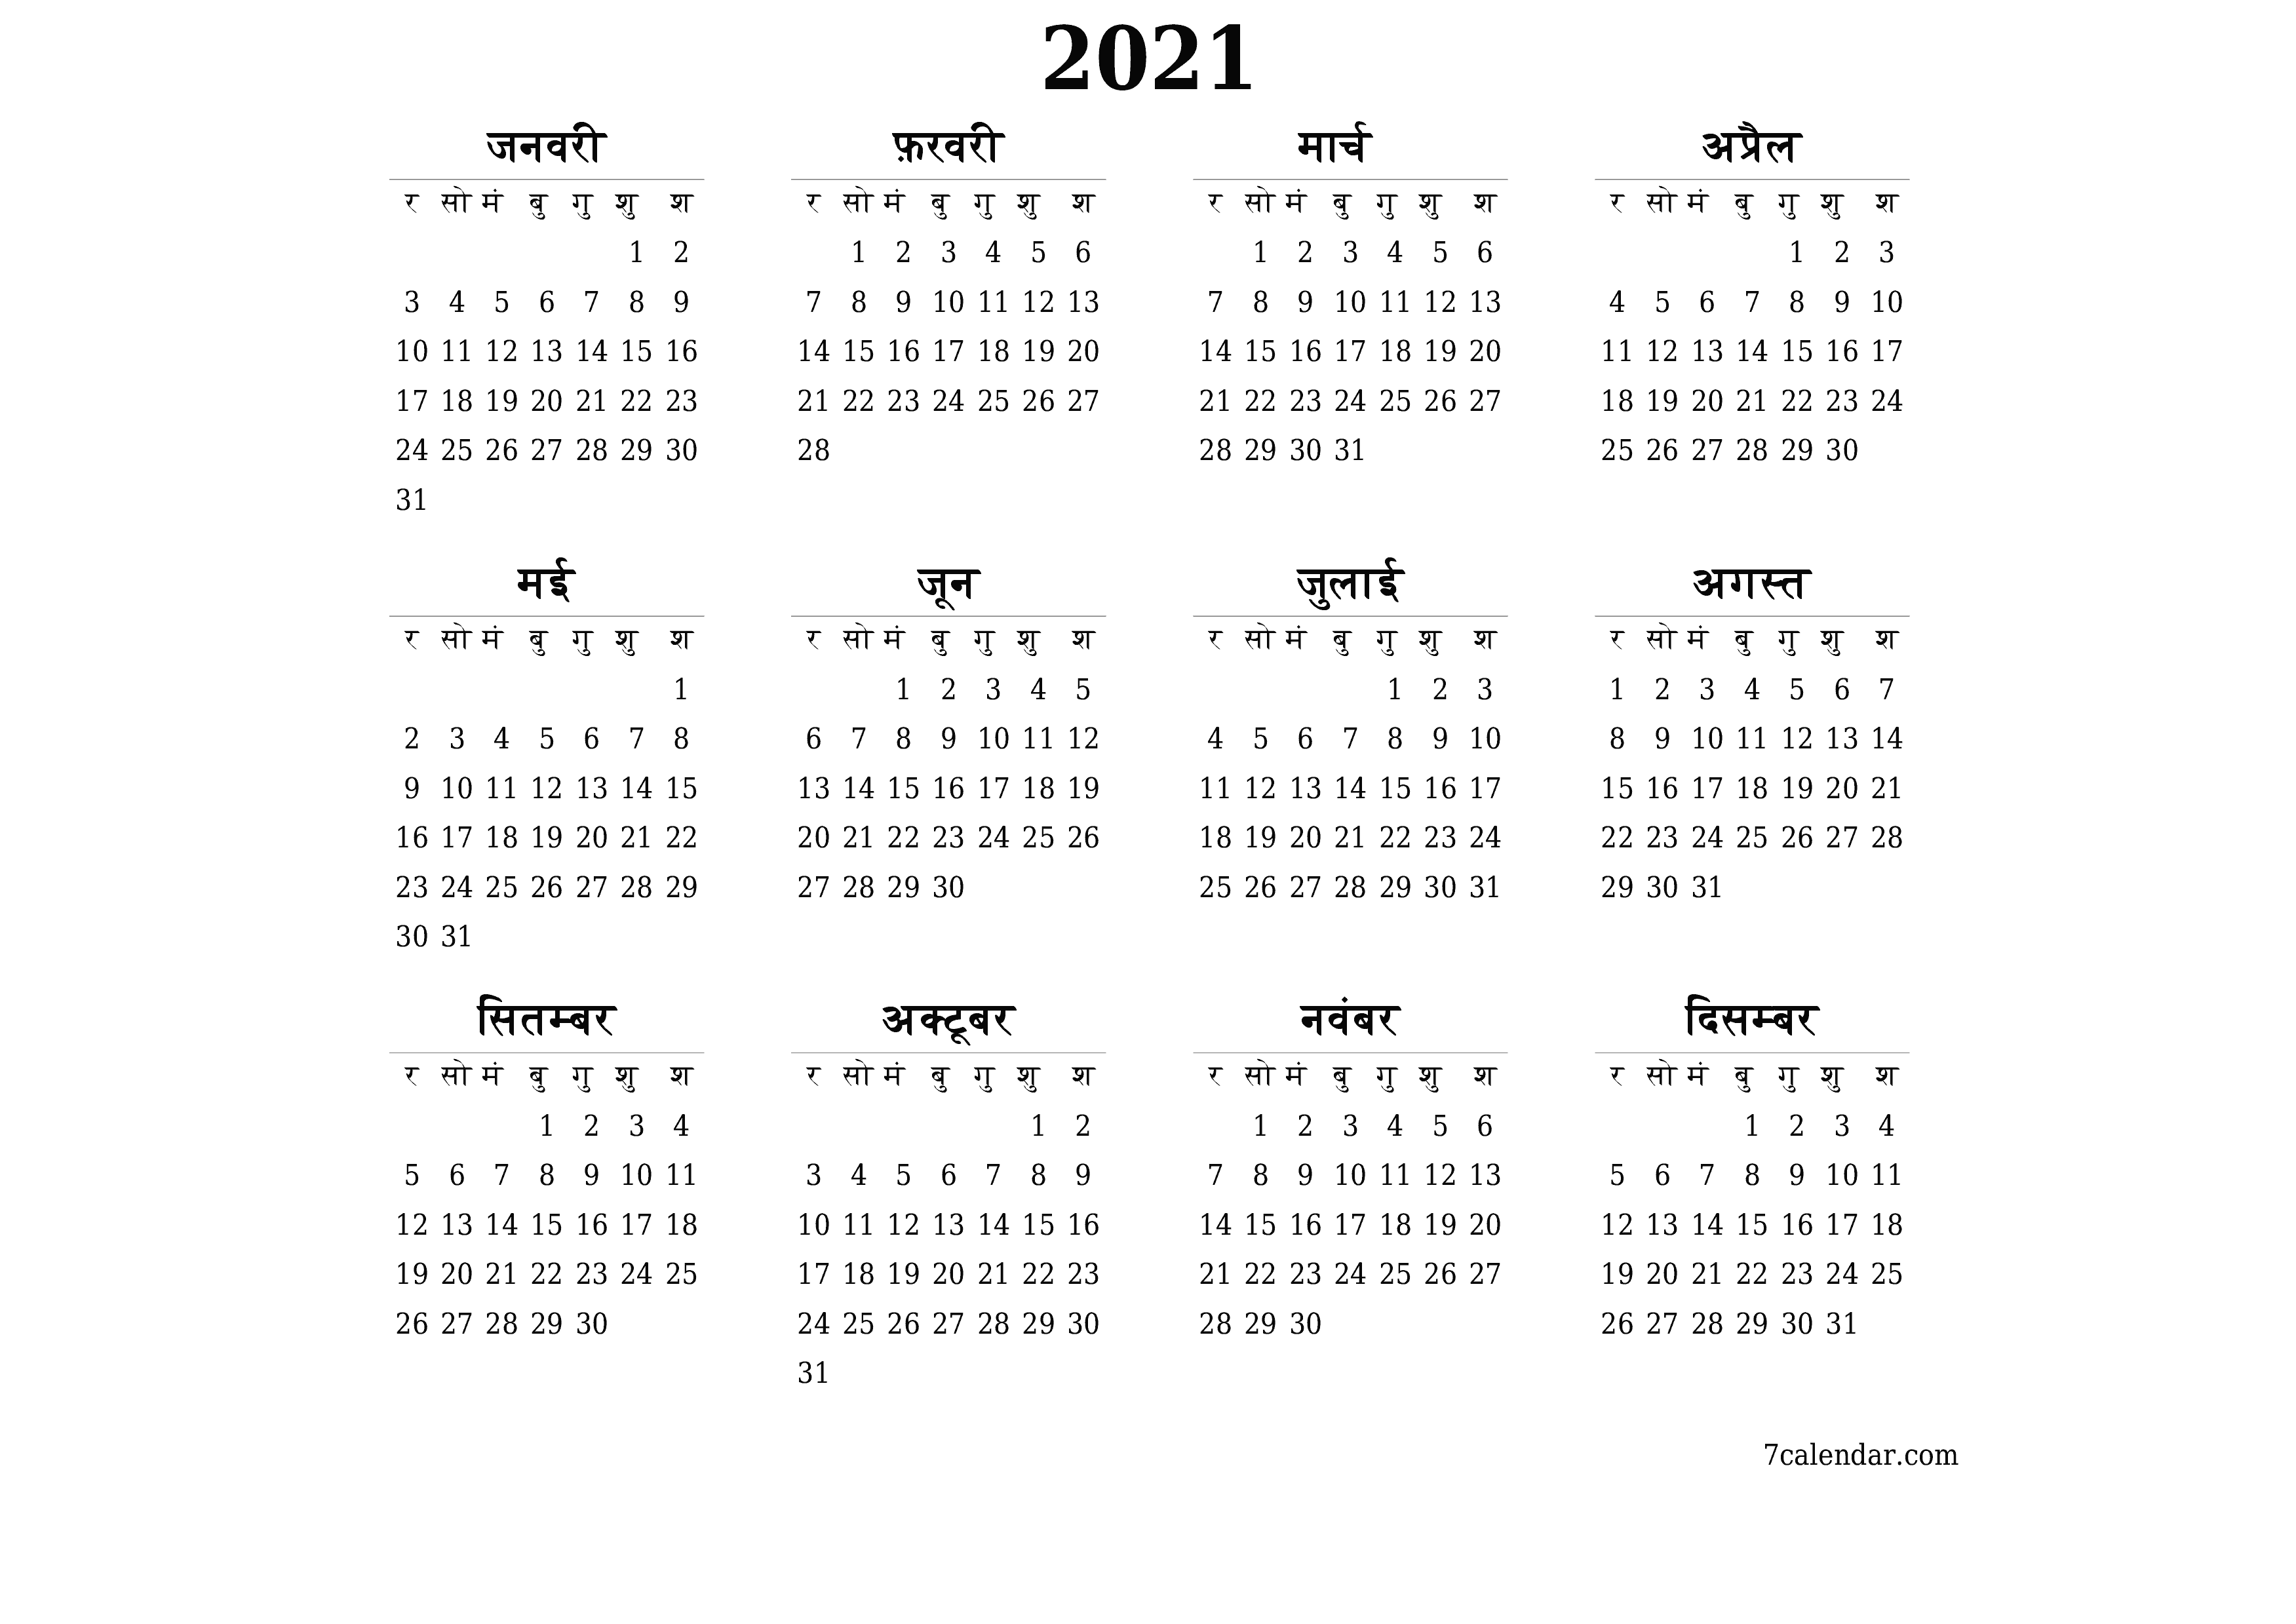 वर्ष 2021 के लिए खाली वार्षिक योजनाकार कैलेंडर, नोट्स के साथ सहेजें और पीडीएफ में प्रिंट करें PNG Hindi - 7calendar.com